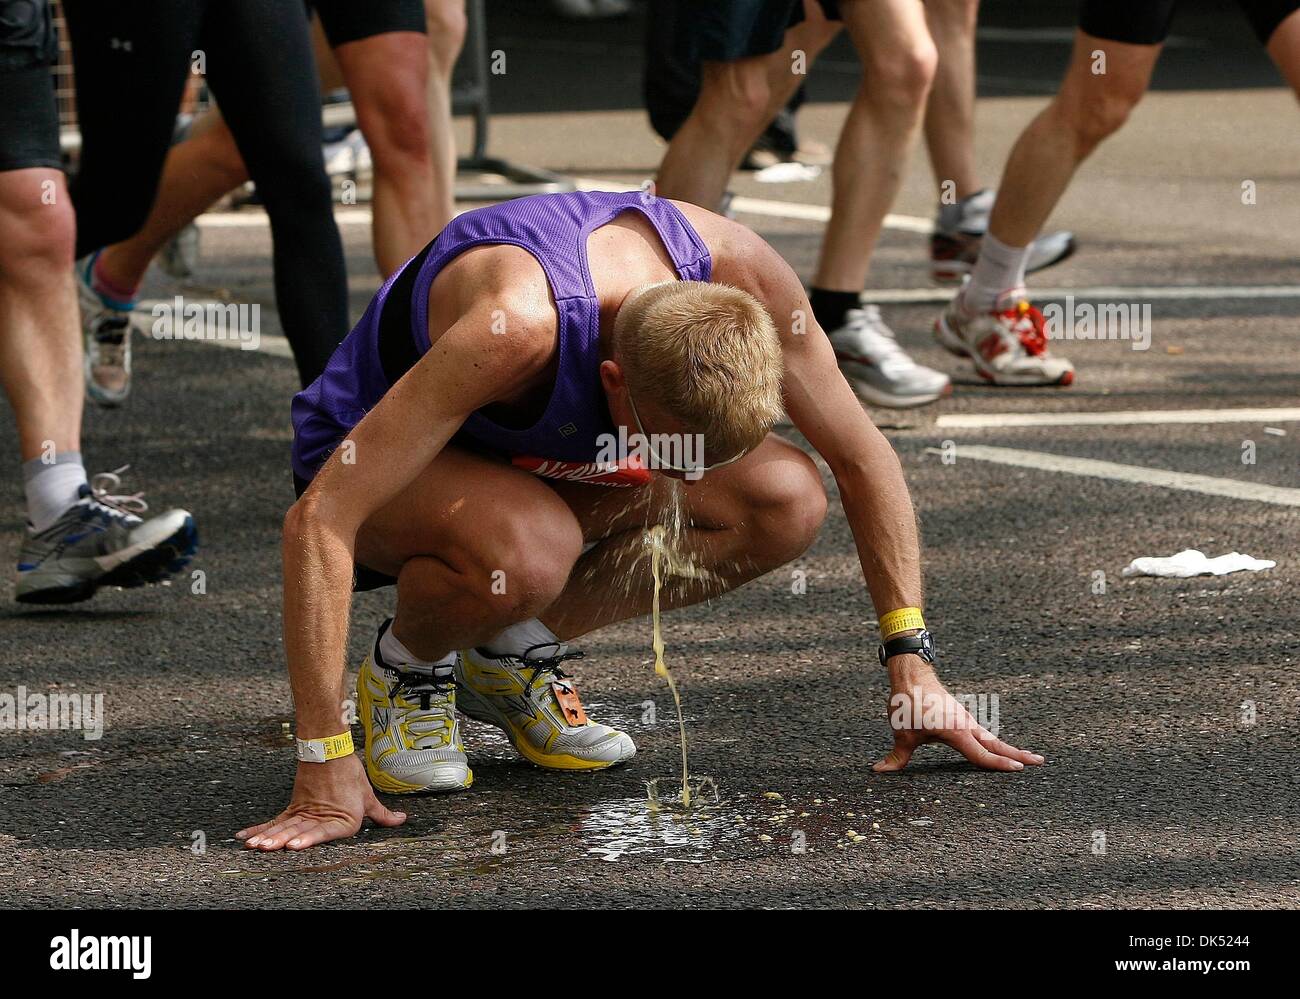 Apr 17, 2011 - Londres, Inglaterra, Reino Unido - Runner encuentra la cepa  demasiado y vomita después de 24 millas durante la Maratón de Londres de  2011 donde participaron 36.000. (Crédito de